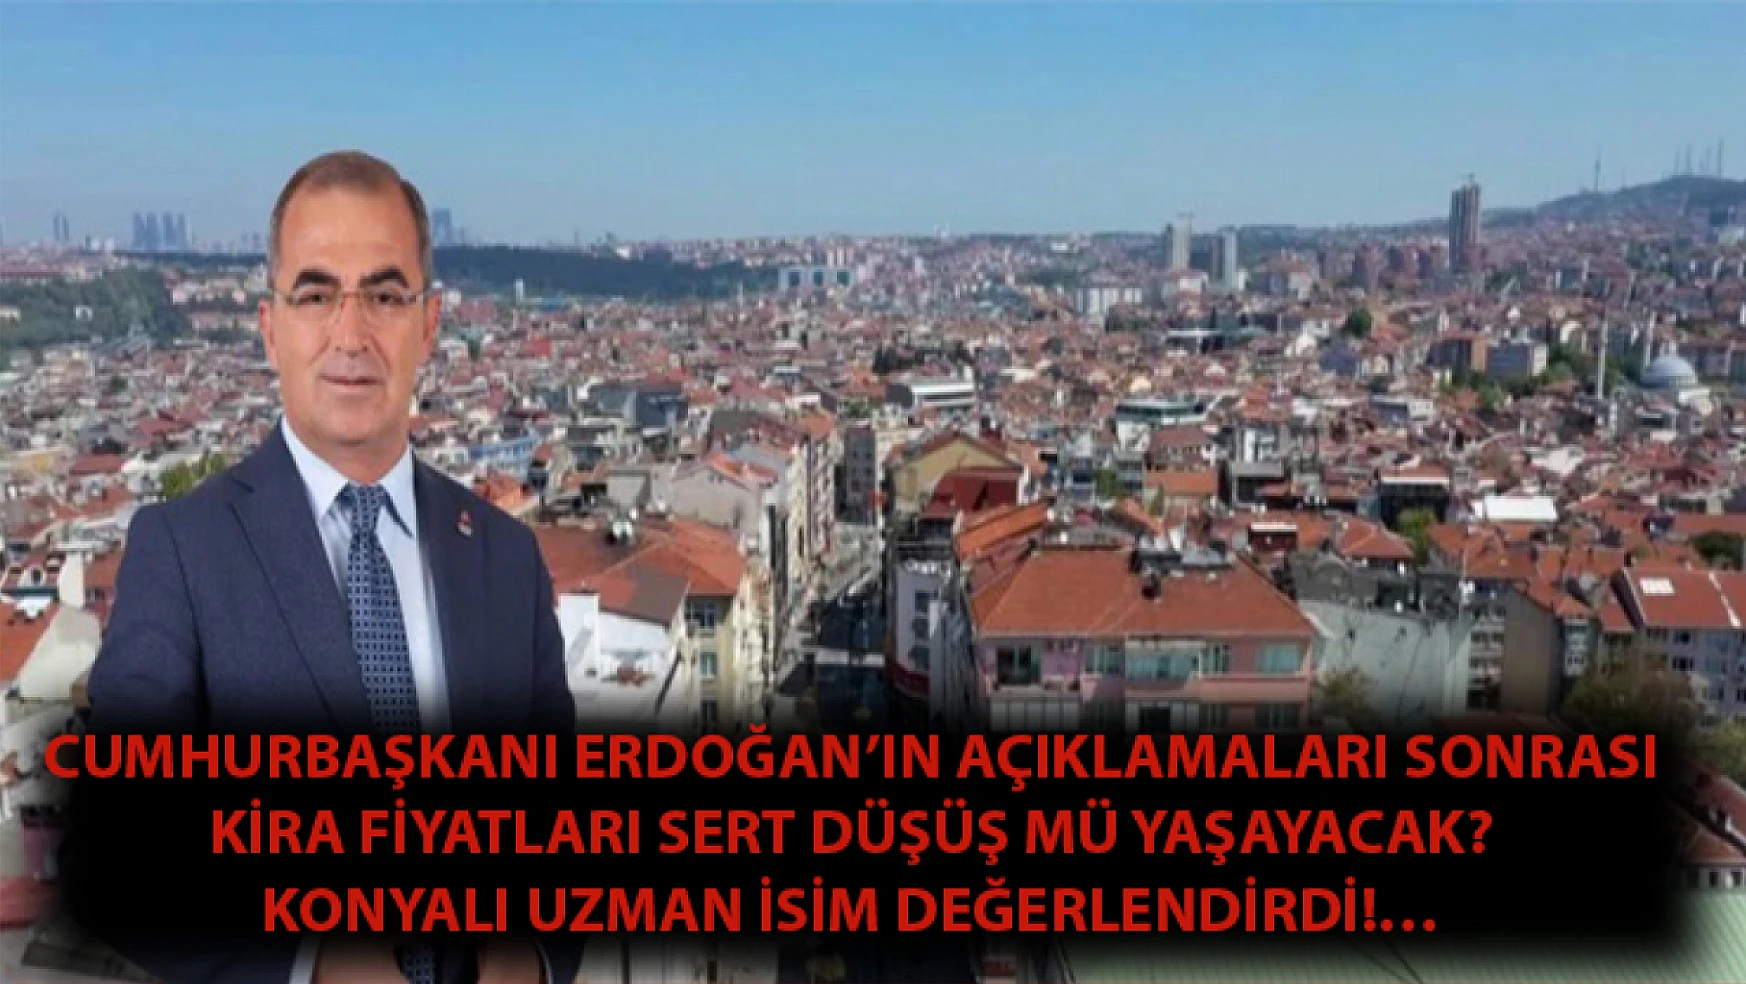 Cumhurbaşkanı Erdoğan'ın açıklamaları sonrası kira fiyatları sert düşüş mü yaşayacak? Konyalı uzman  isim değerlendirdi!…